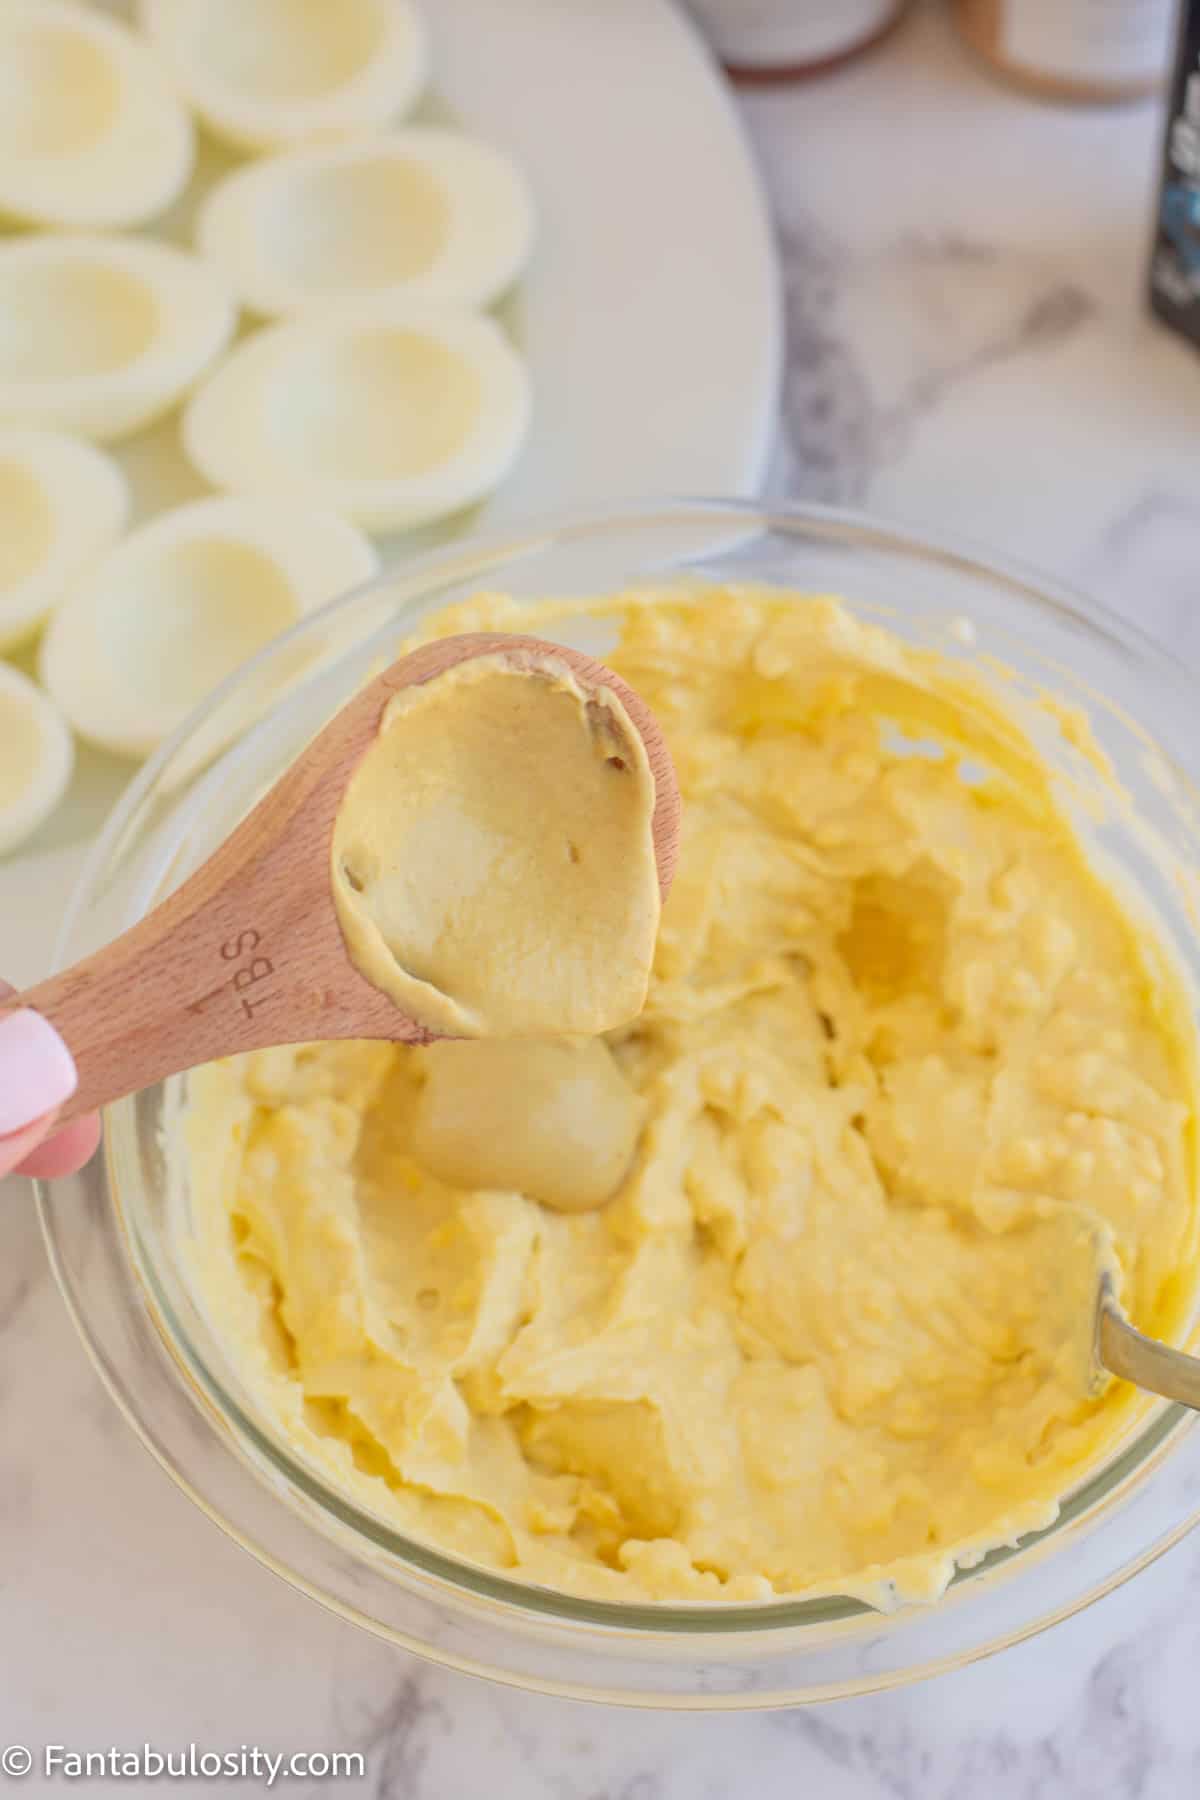 mustard being added to yolk